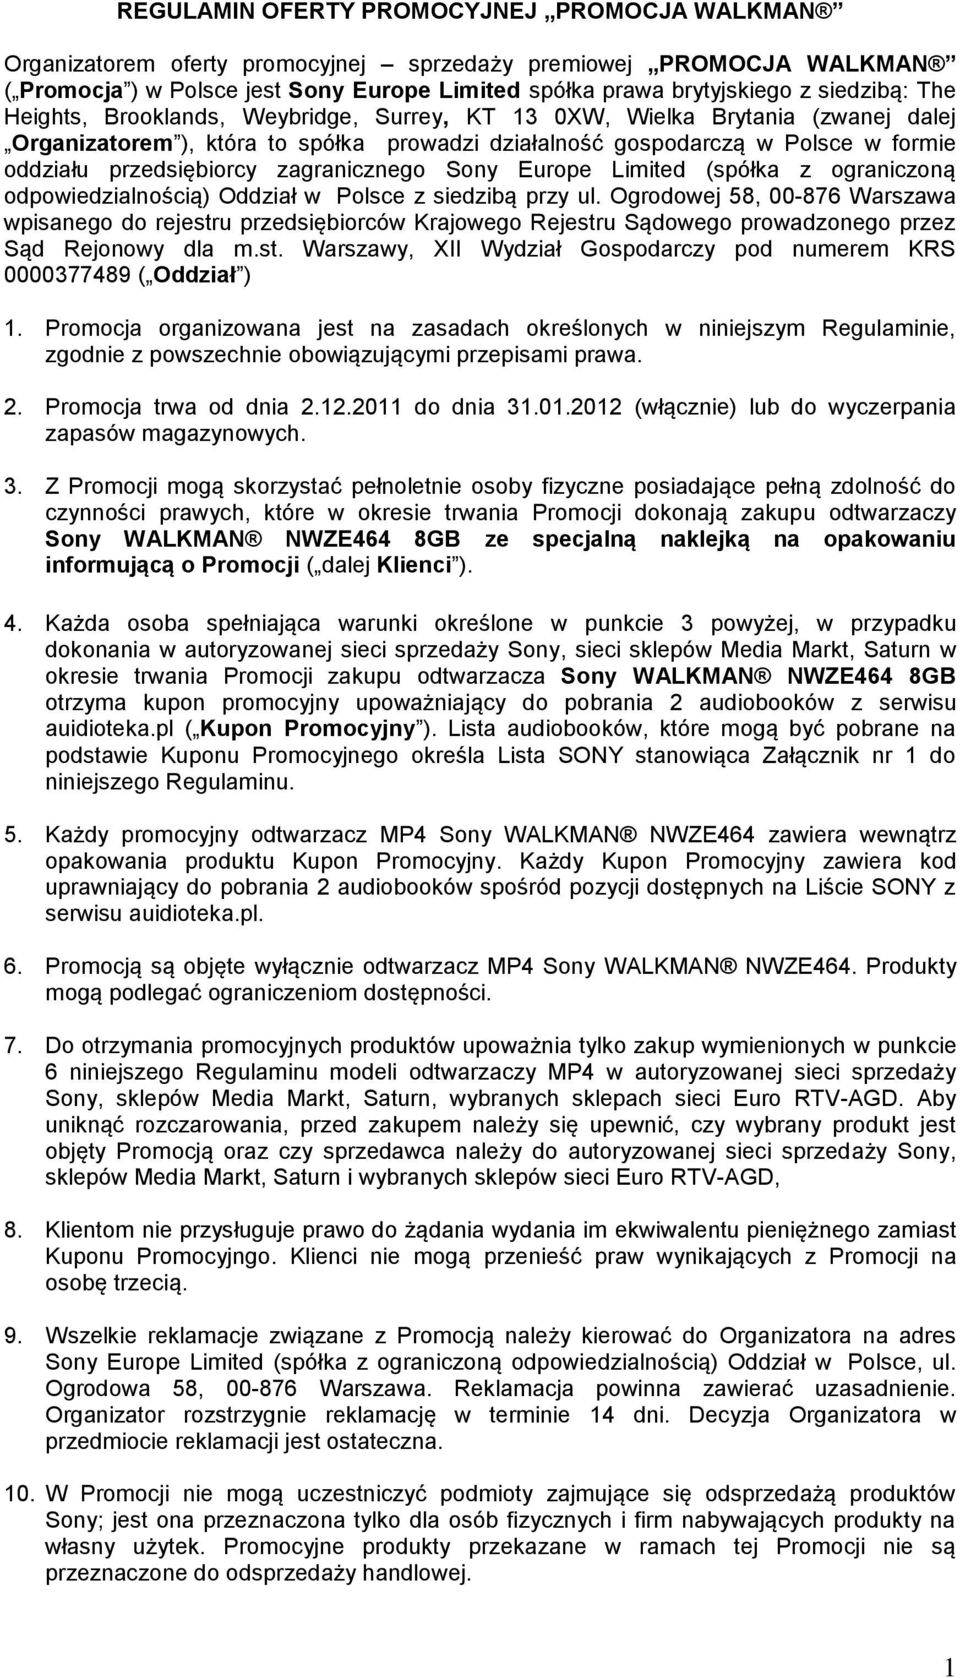 przedsiębiorcy zagranicznego Sony Europe Limited (spółka z ograniczoną odpowiedzialnością) Oddział w Polsce z siedzibą przy ul.